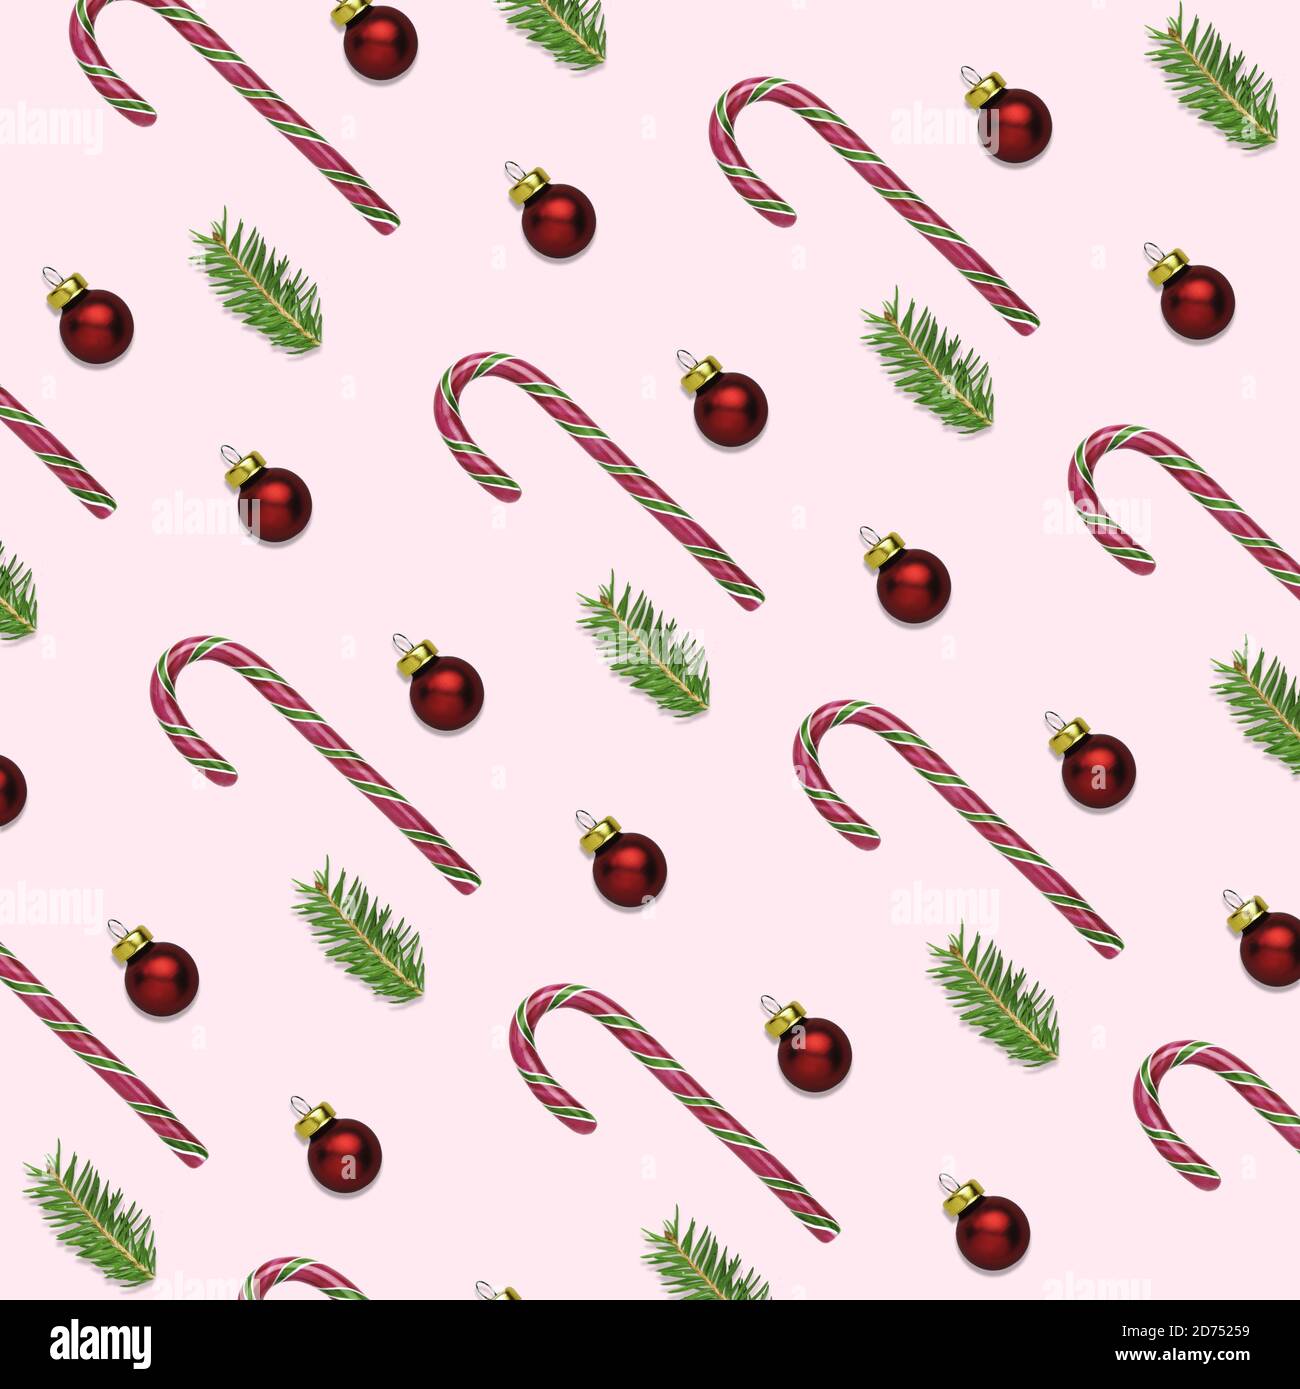 Ilustración 3D de fondo rosa de Navidad o año Nuevo con bastones de caña de caramelo, bolas rojas y ramas de abeto. Concepto de papel para envolver para el invierno Foto de stock